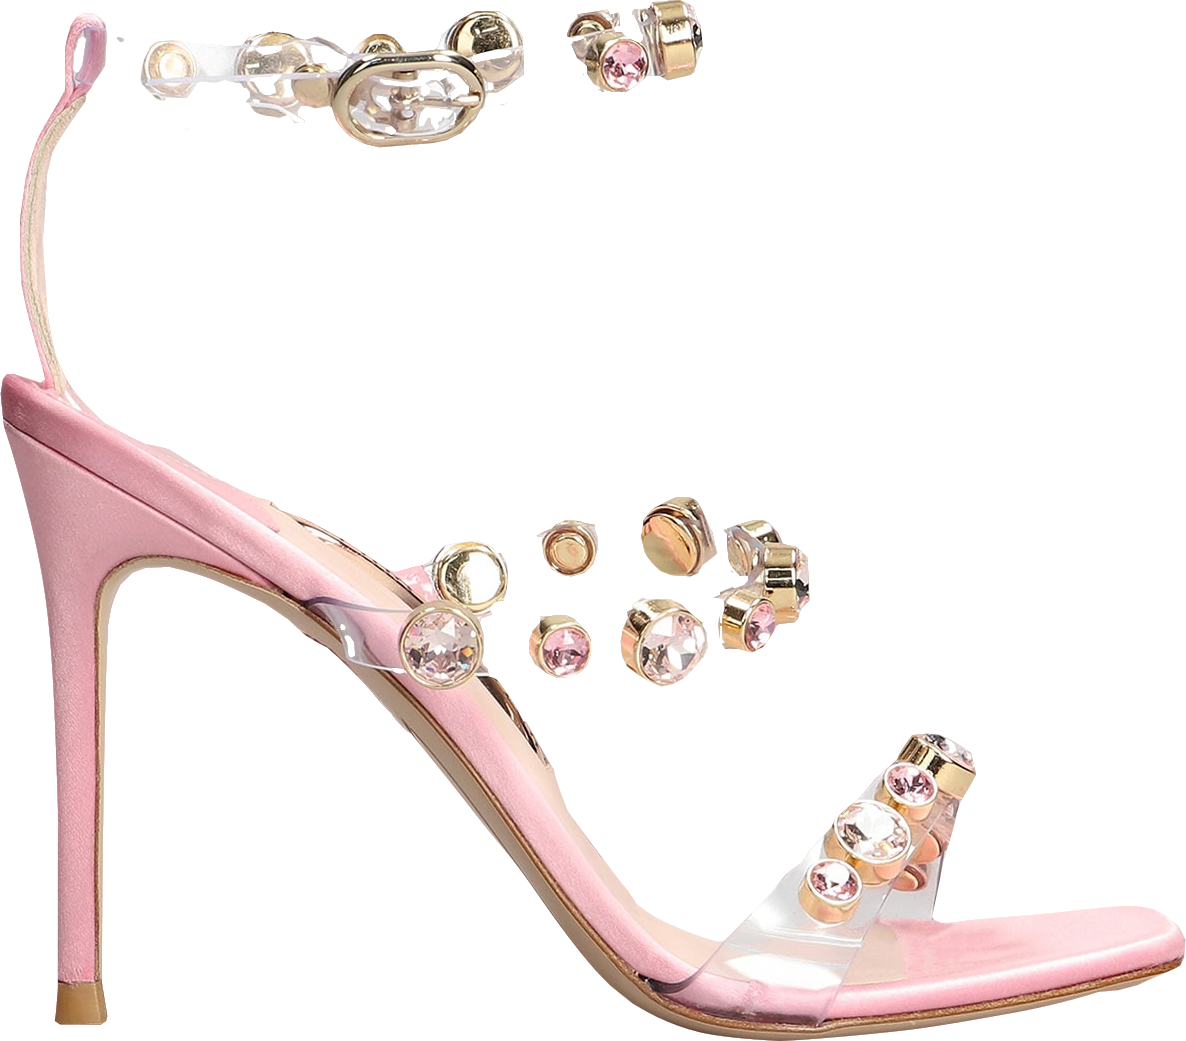 Sophia Webster Rose Pink crystal embellished  Heeled Sandals BNIB UK 5 EU 38 👠